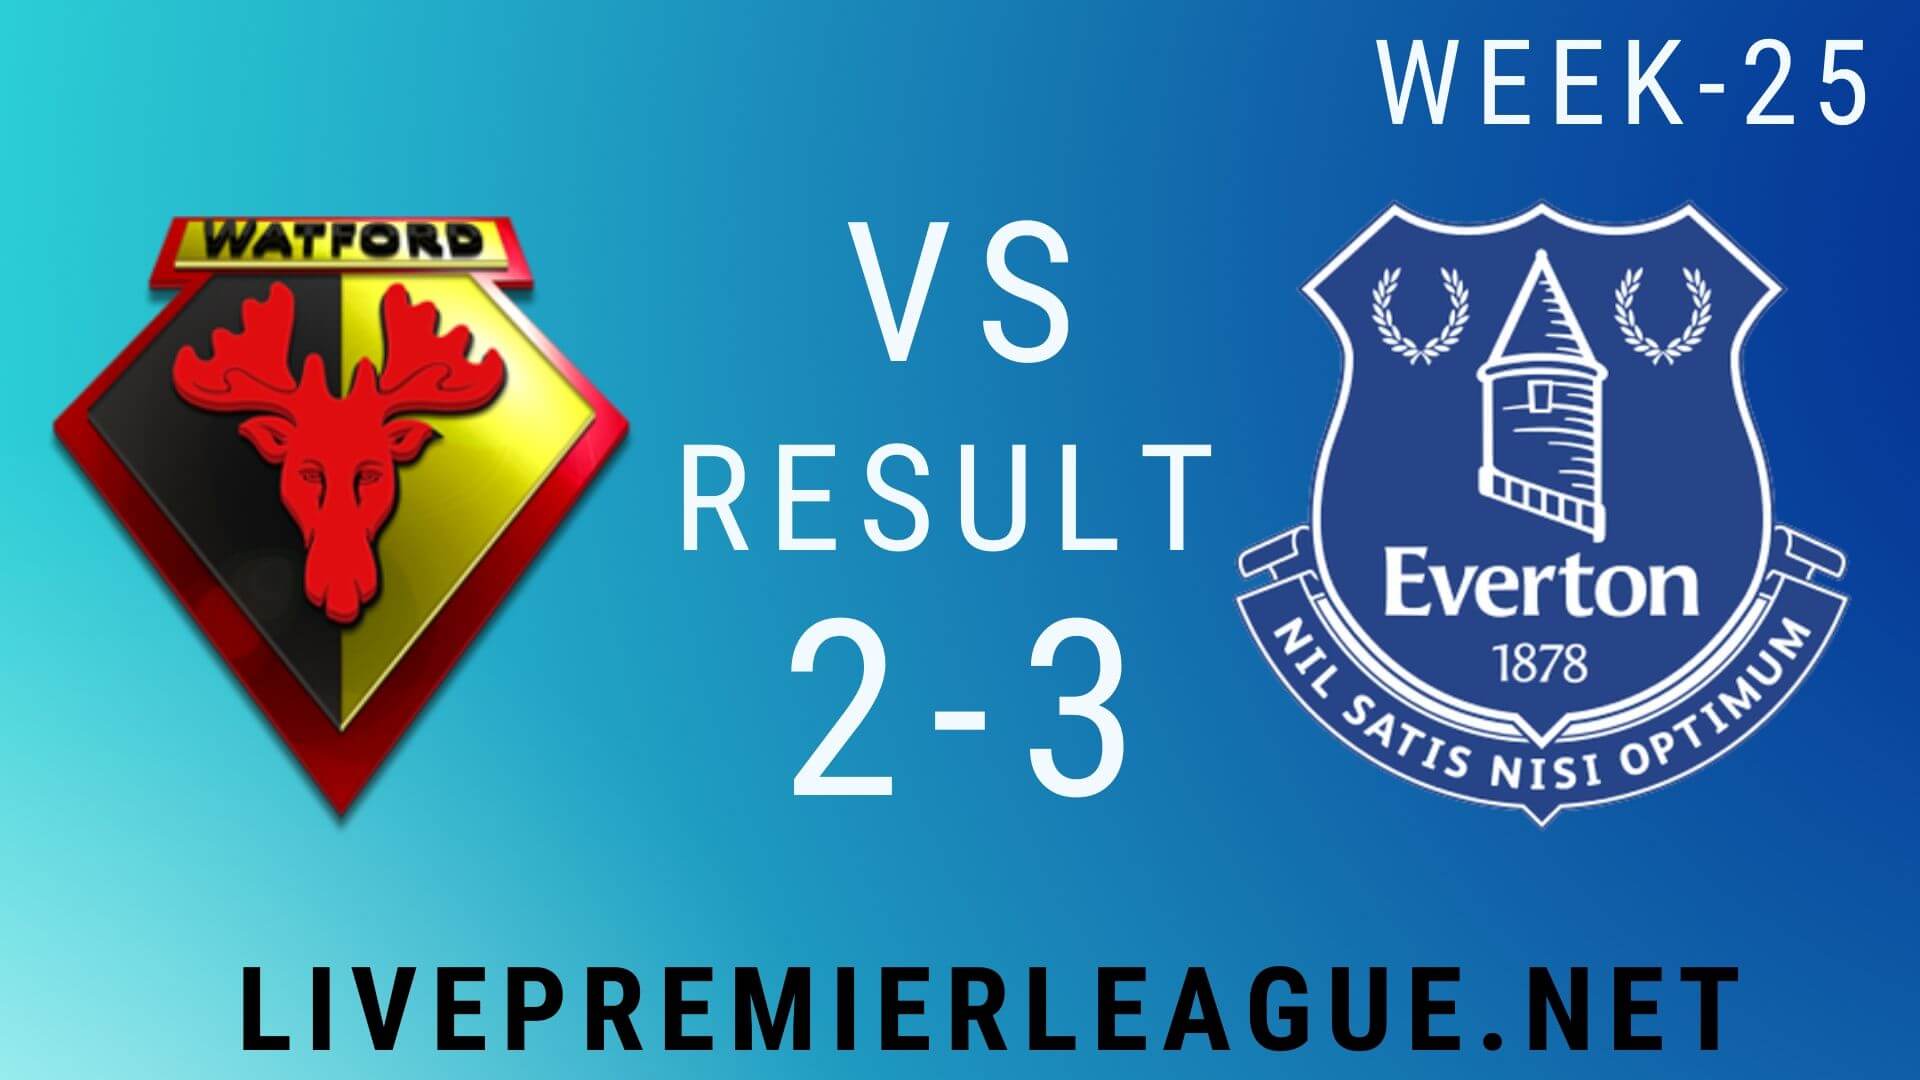 Watford Vs Everton | Week 25 Result 2020